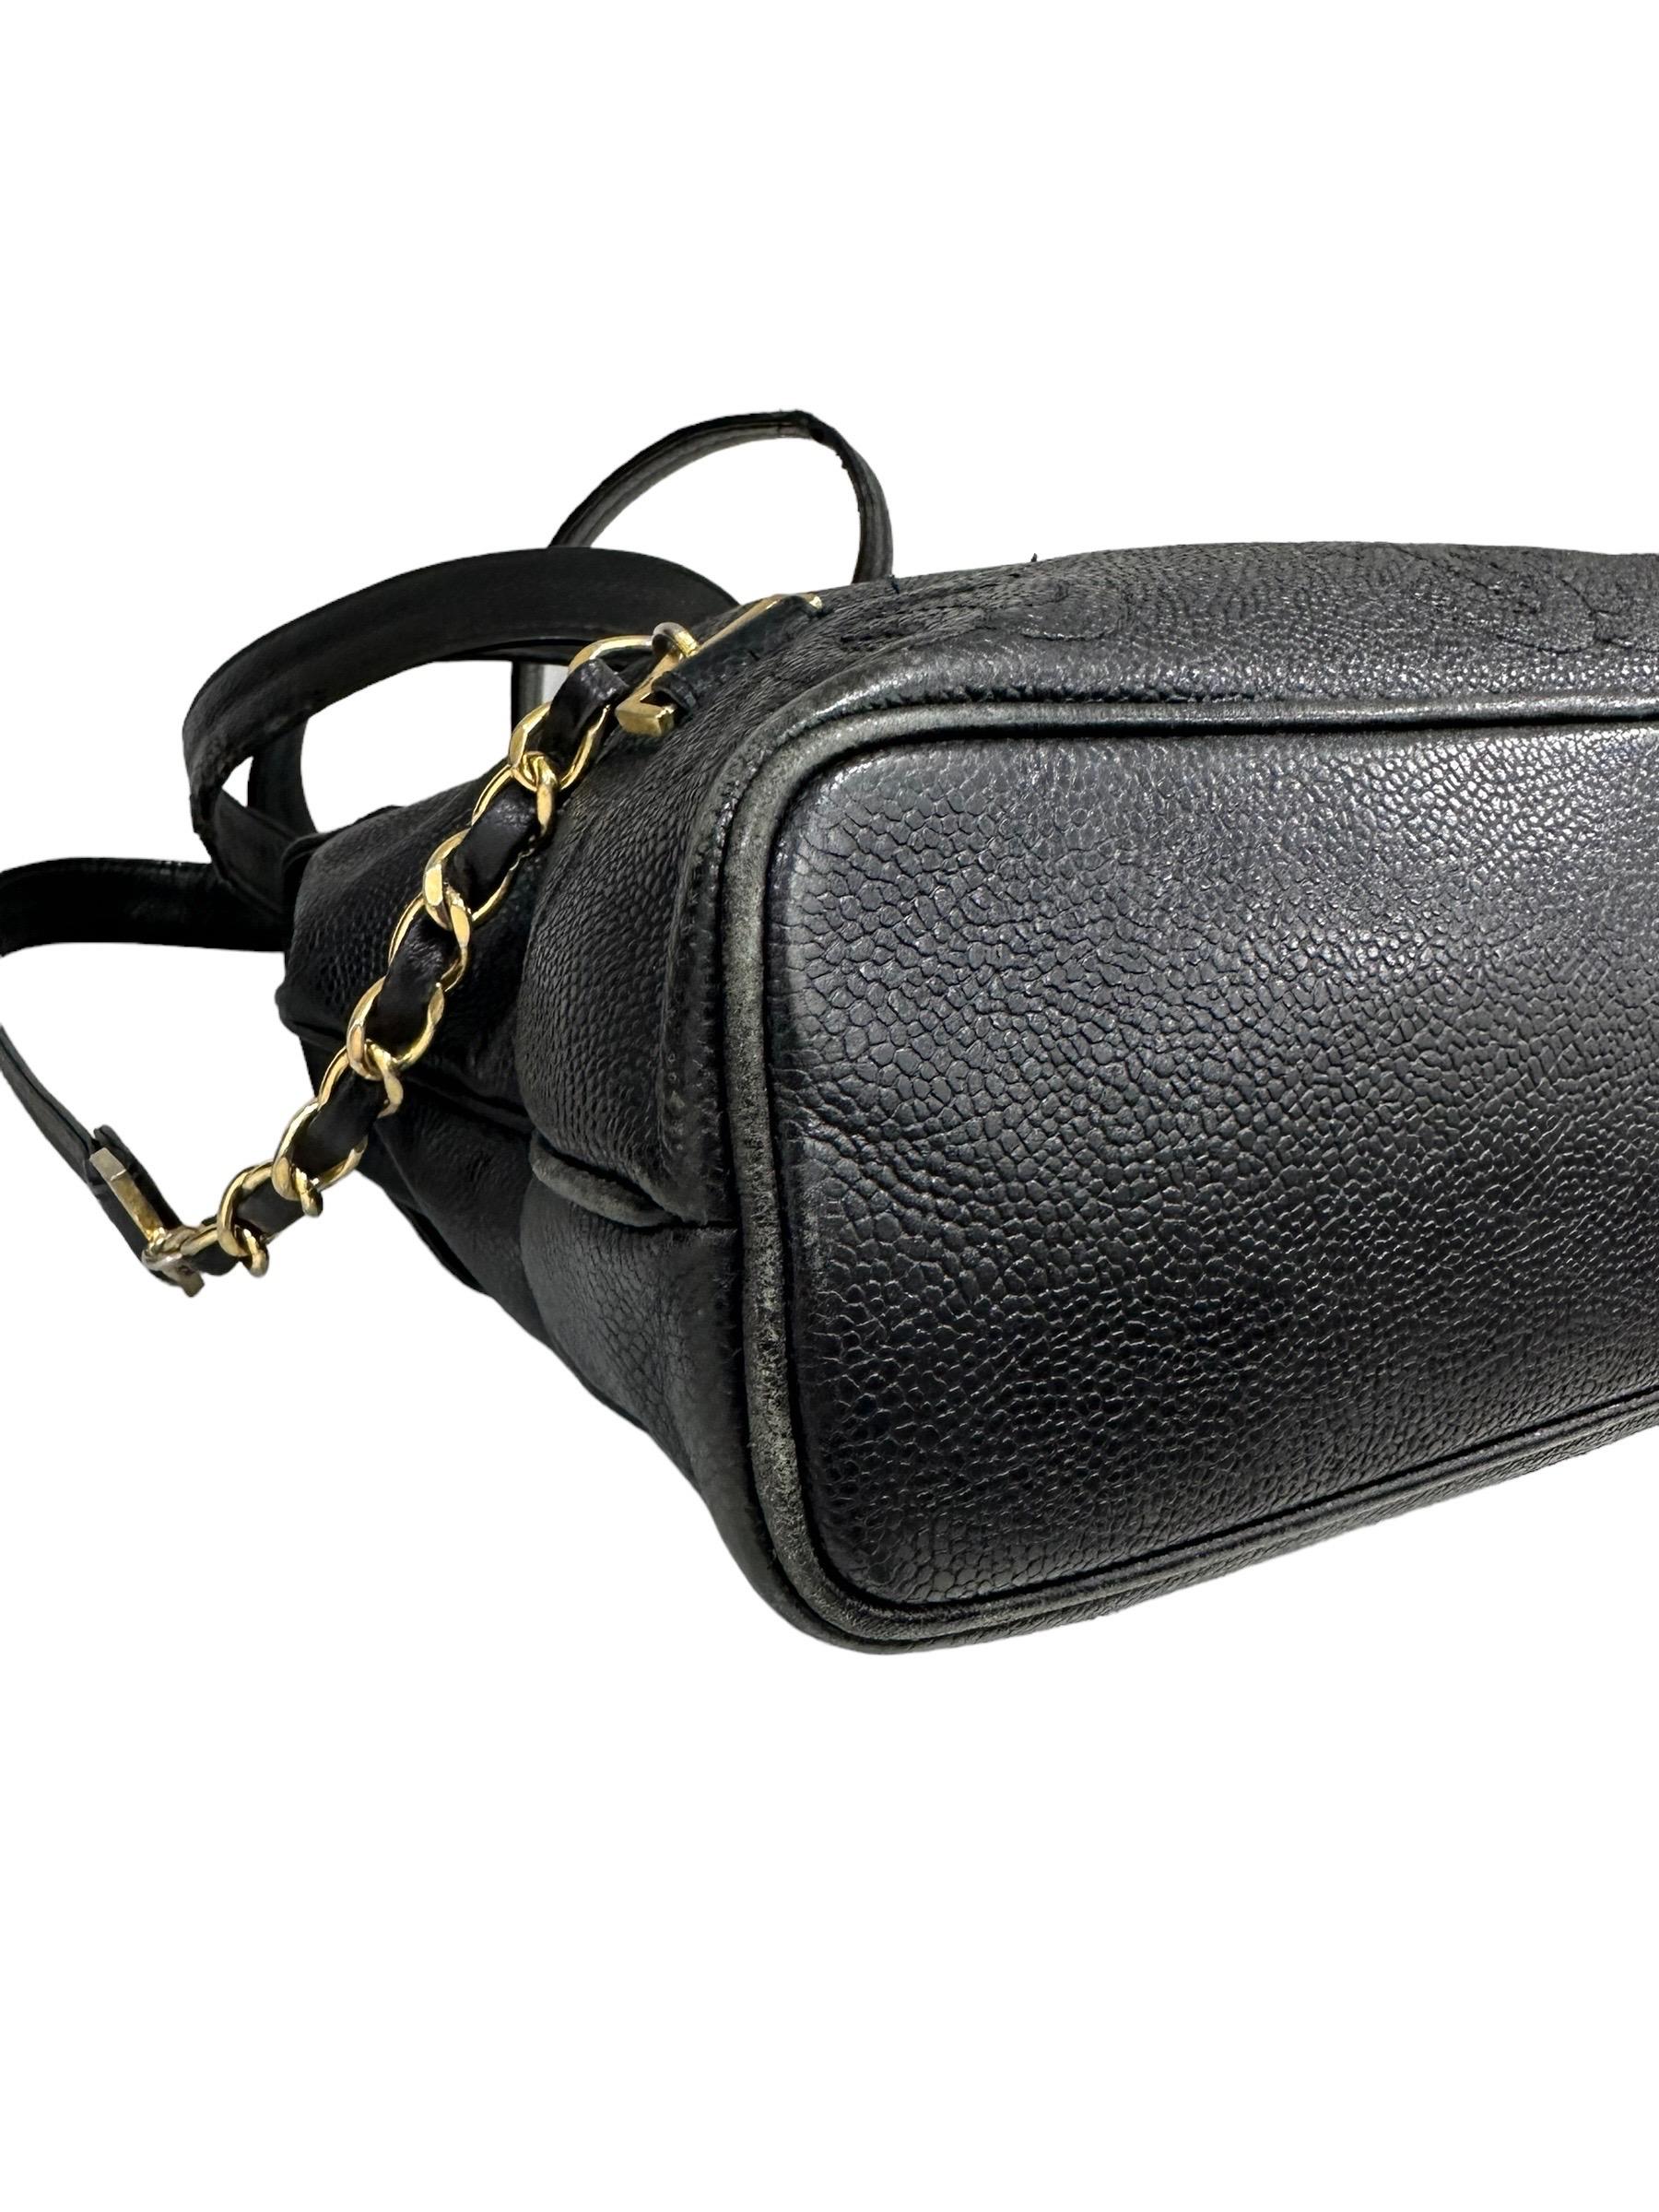 1997 Chanel Black Leather Vintage Backpack  8